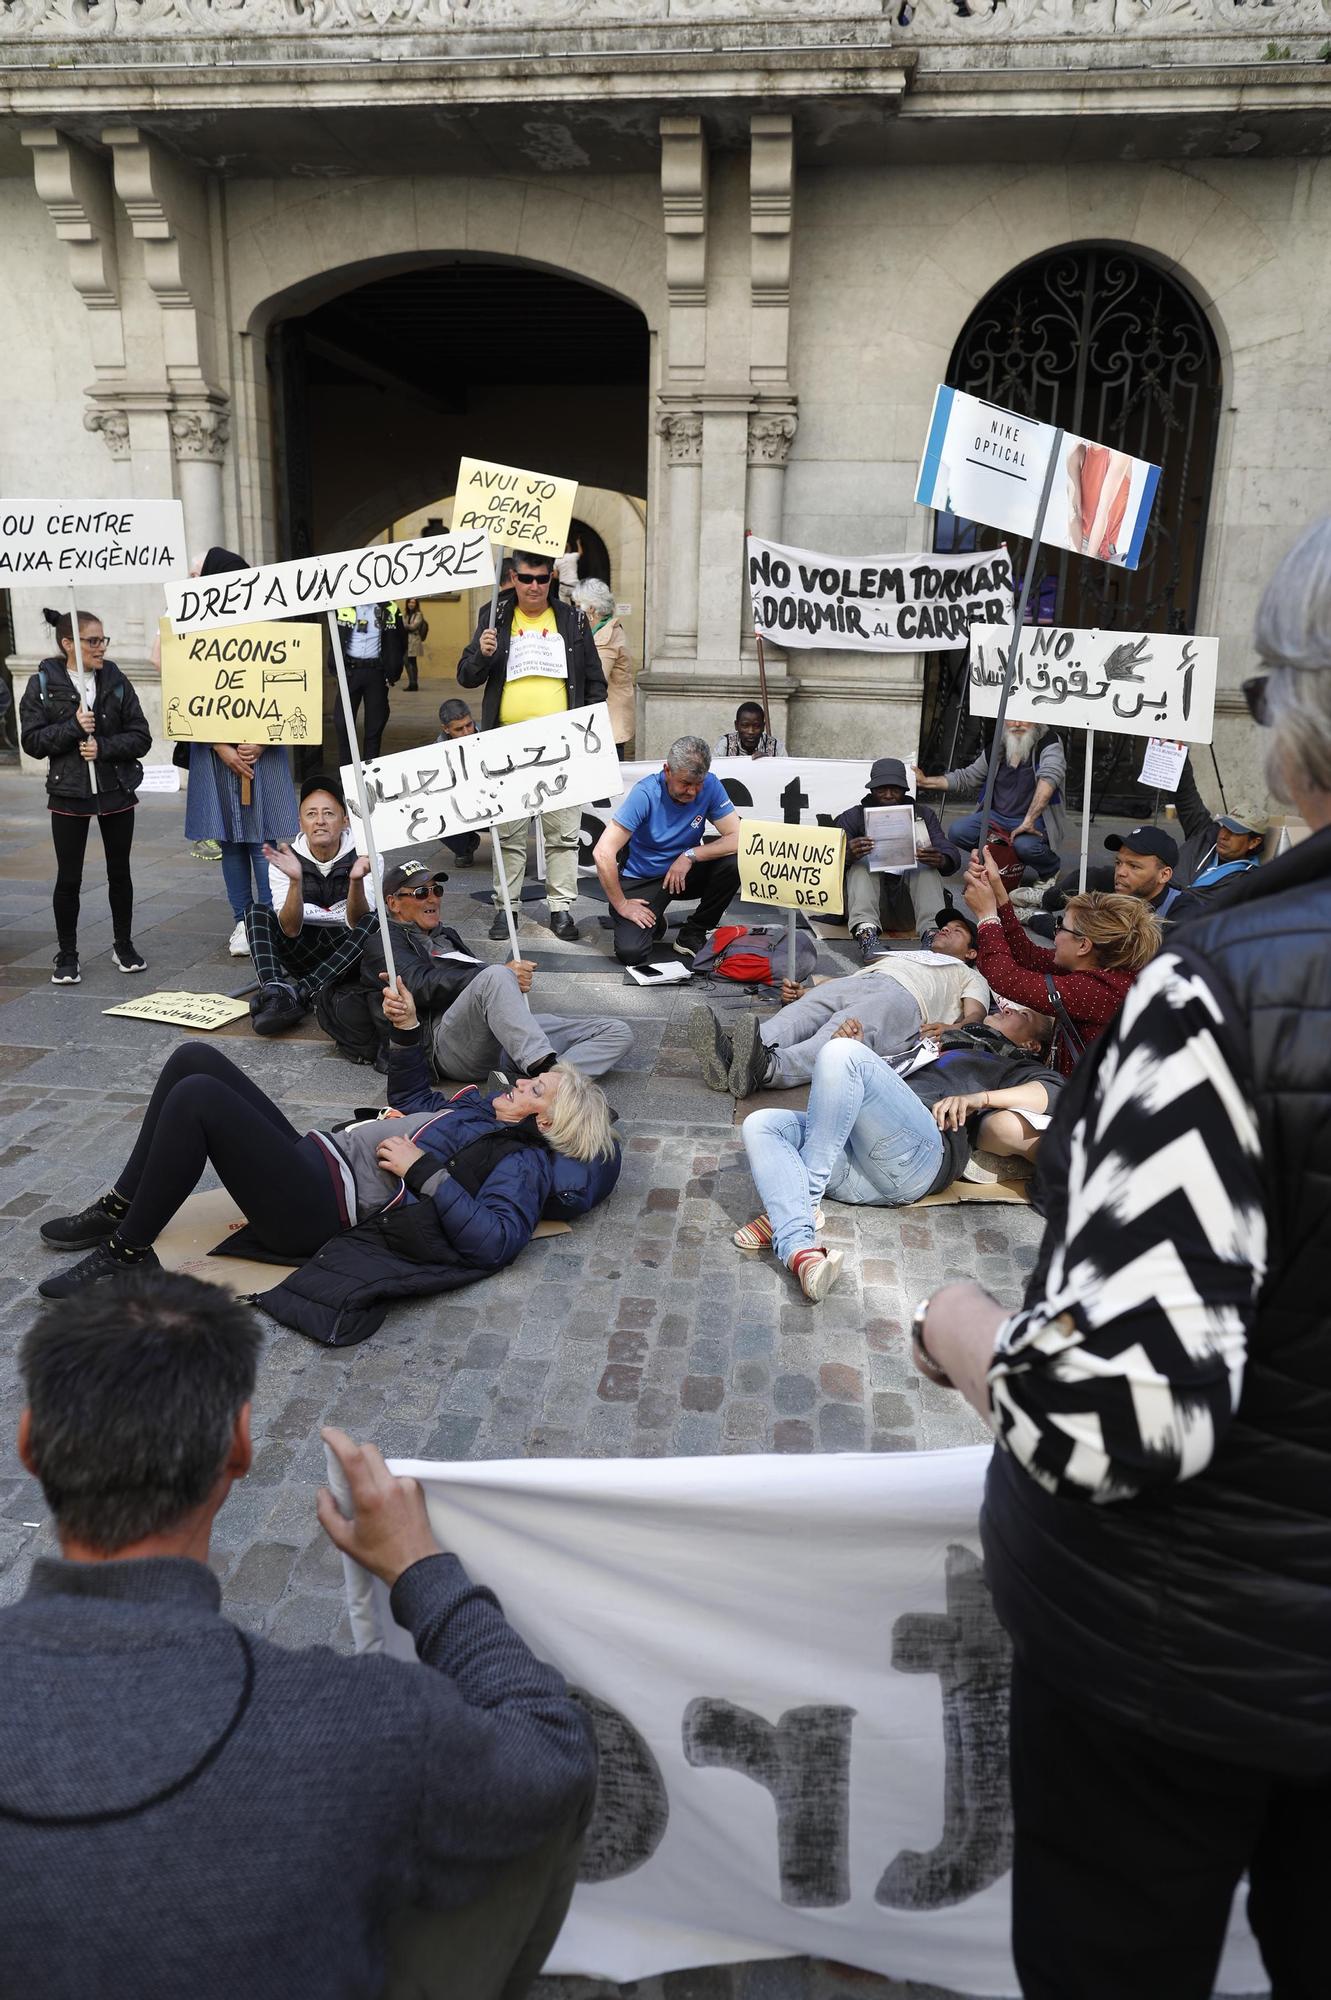 Les persones sense llar es concentren davant l'Ajuntament de Girona per reclamar «un sostre digne»